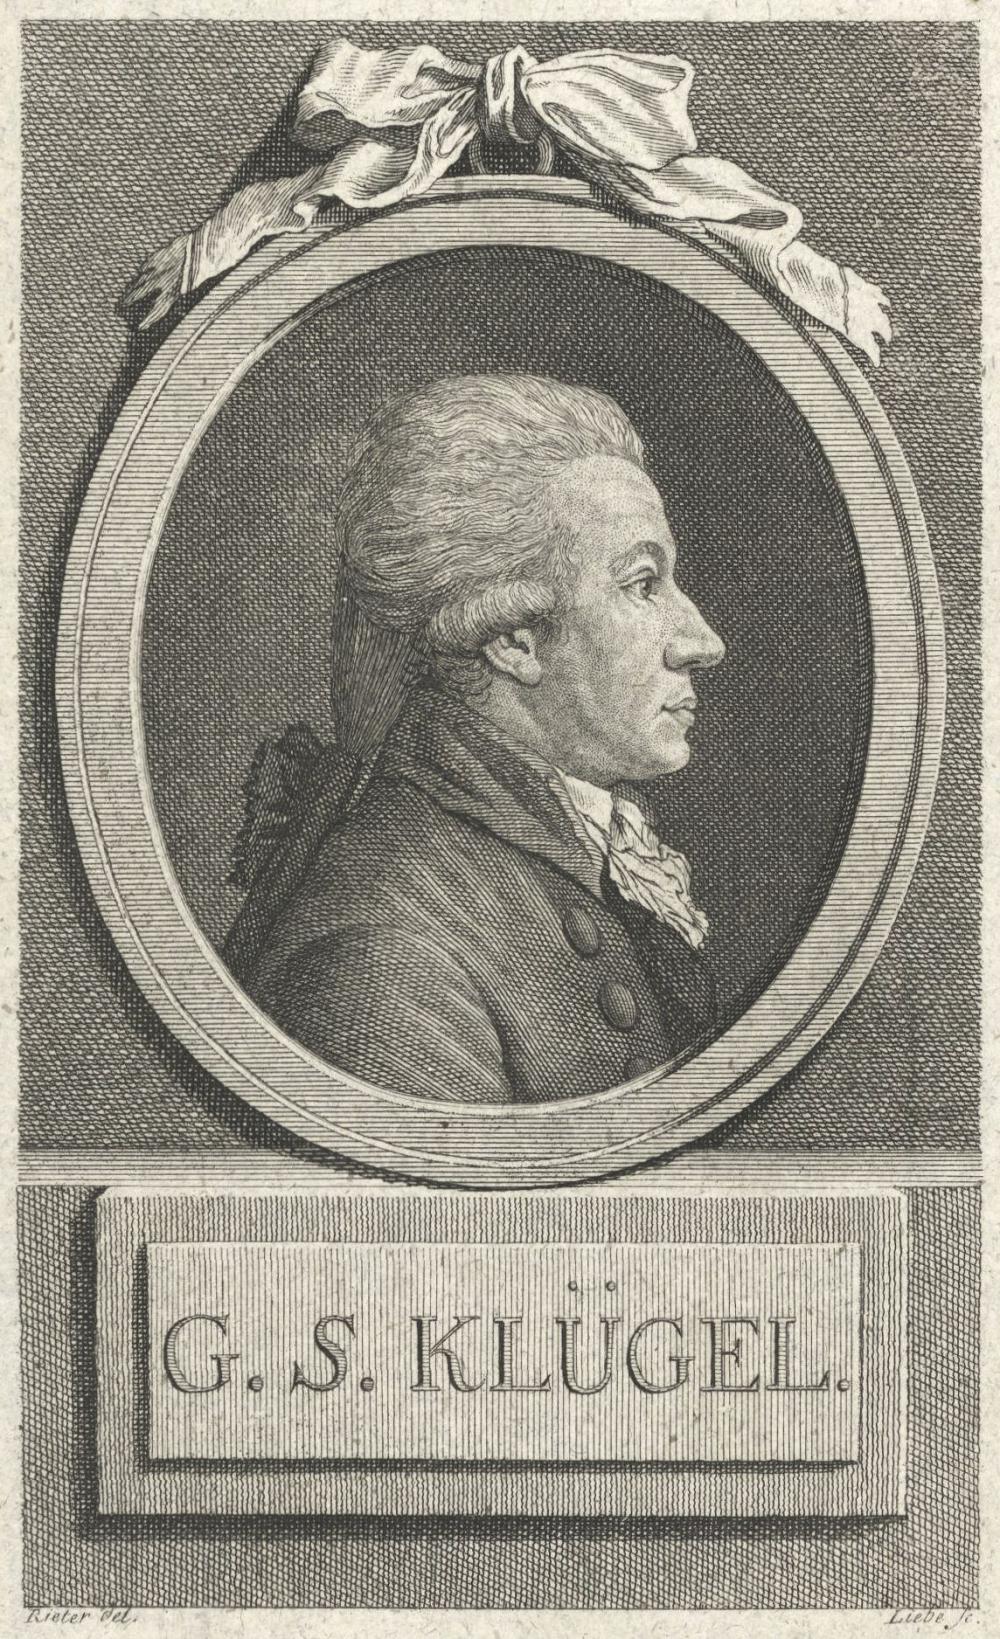 Georg Simon Klügel (1739--1812), director of Hall